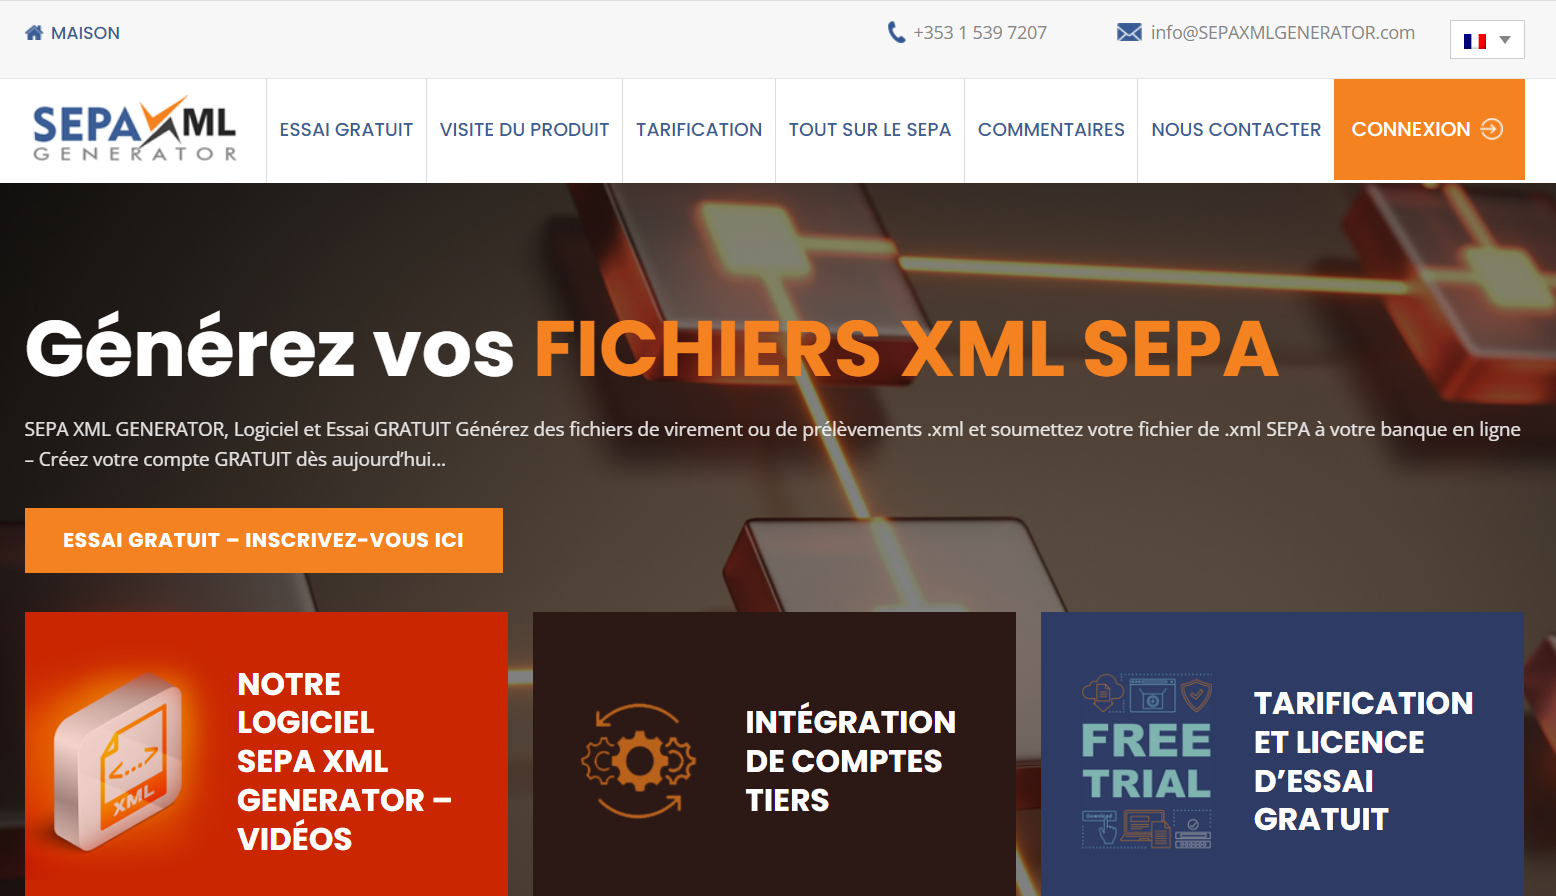 SEPA XML GENERATOR webiste is now in French